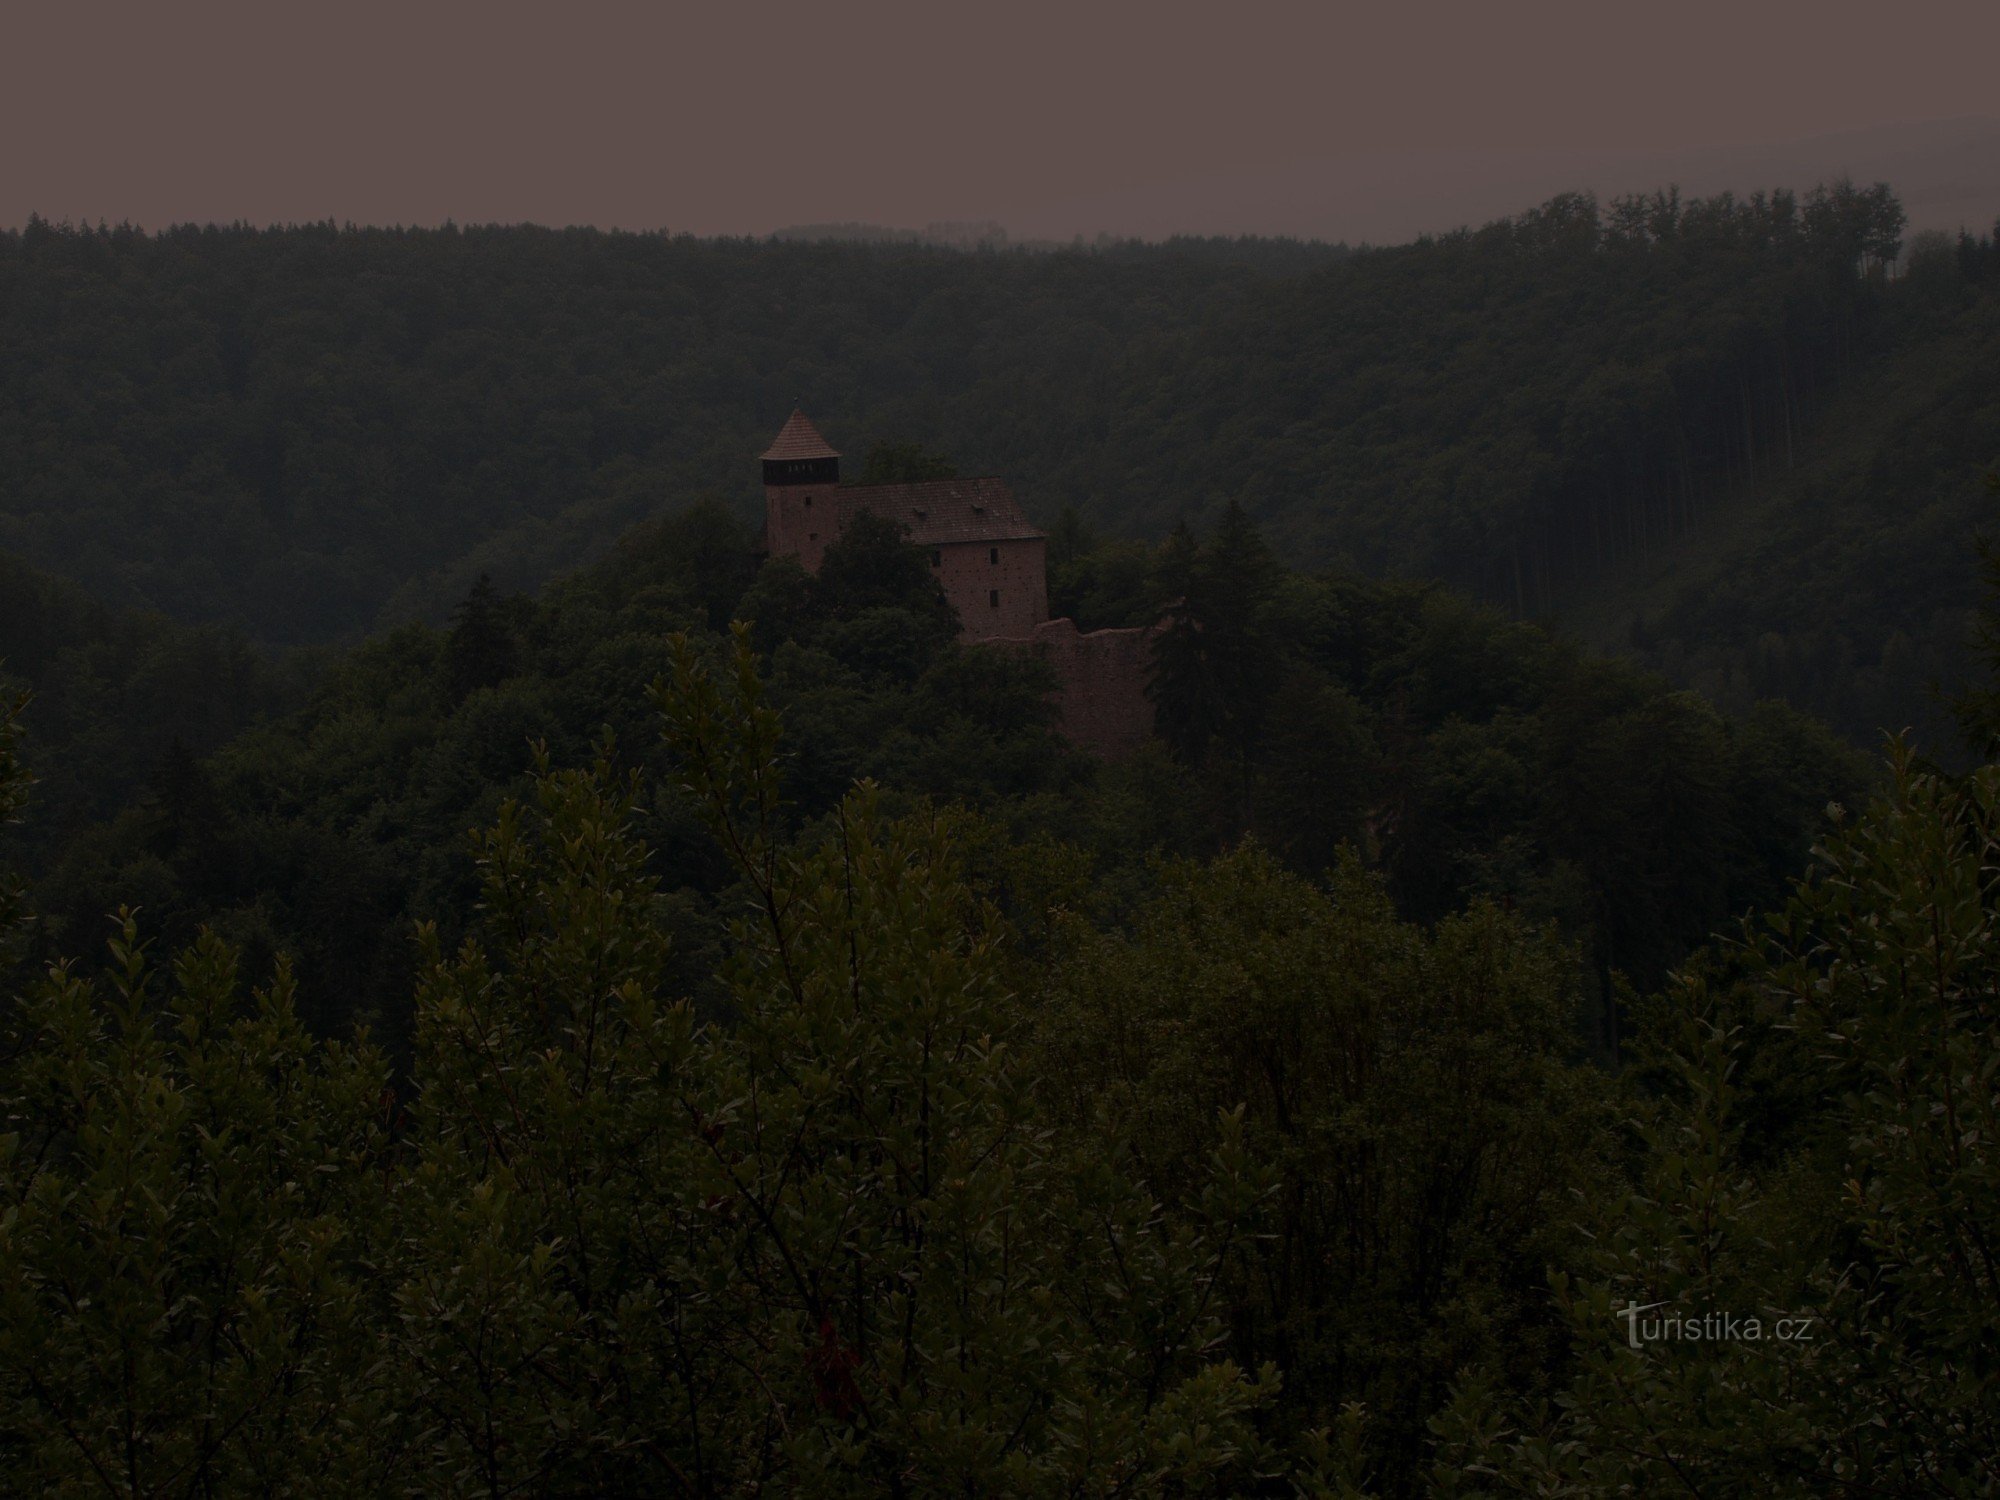 Castelul medieval litice nad Orlicí